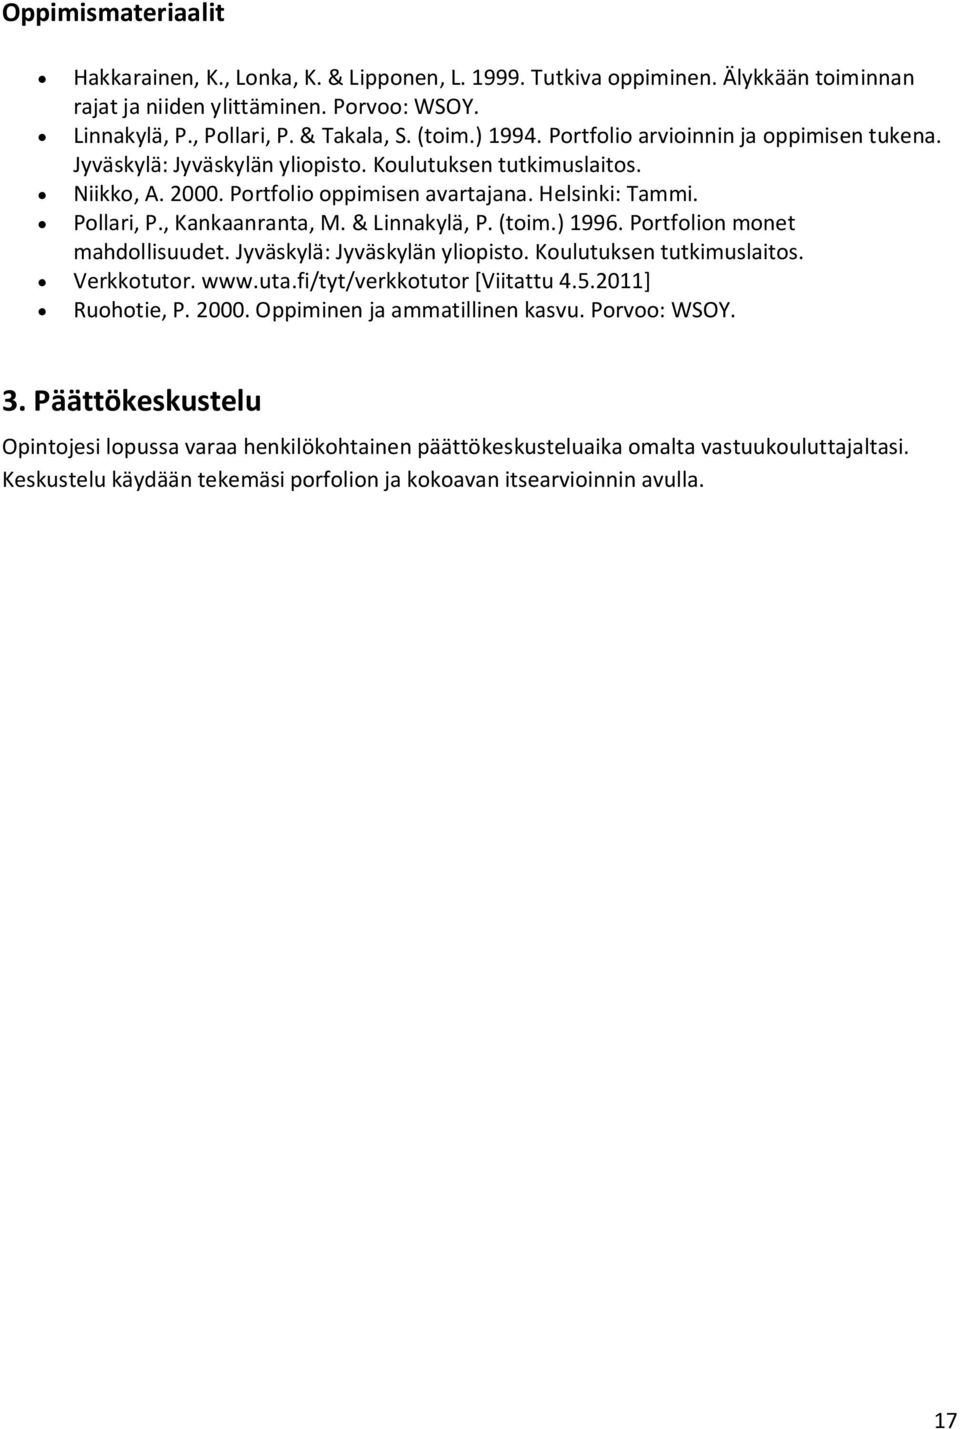 , Kankaanranta, M. & Linnakylä, P. (toim.) 1996. Portfolion monet mahdollisuudet. Jyväskylä: Jyväskylän yliopisto. Koulutuksen tutkimuslaitos. Verkkotutor. www.uta.fi/tyt/verkkotutor [Viitattu 4.5.